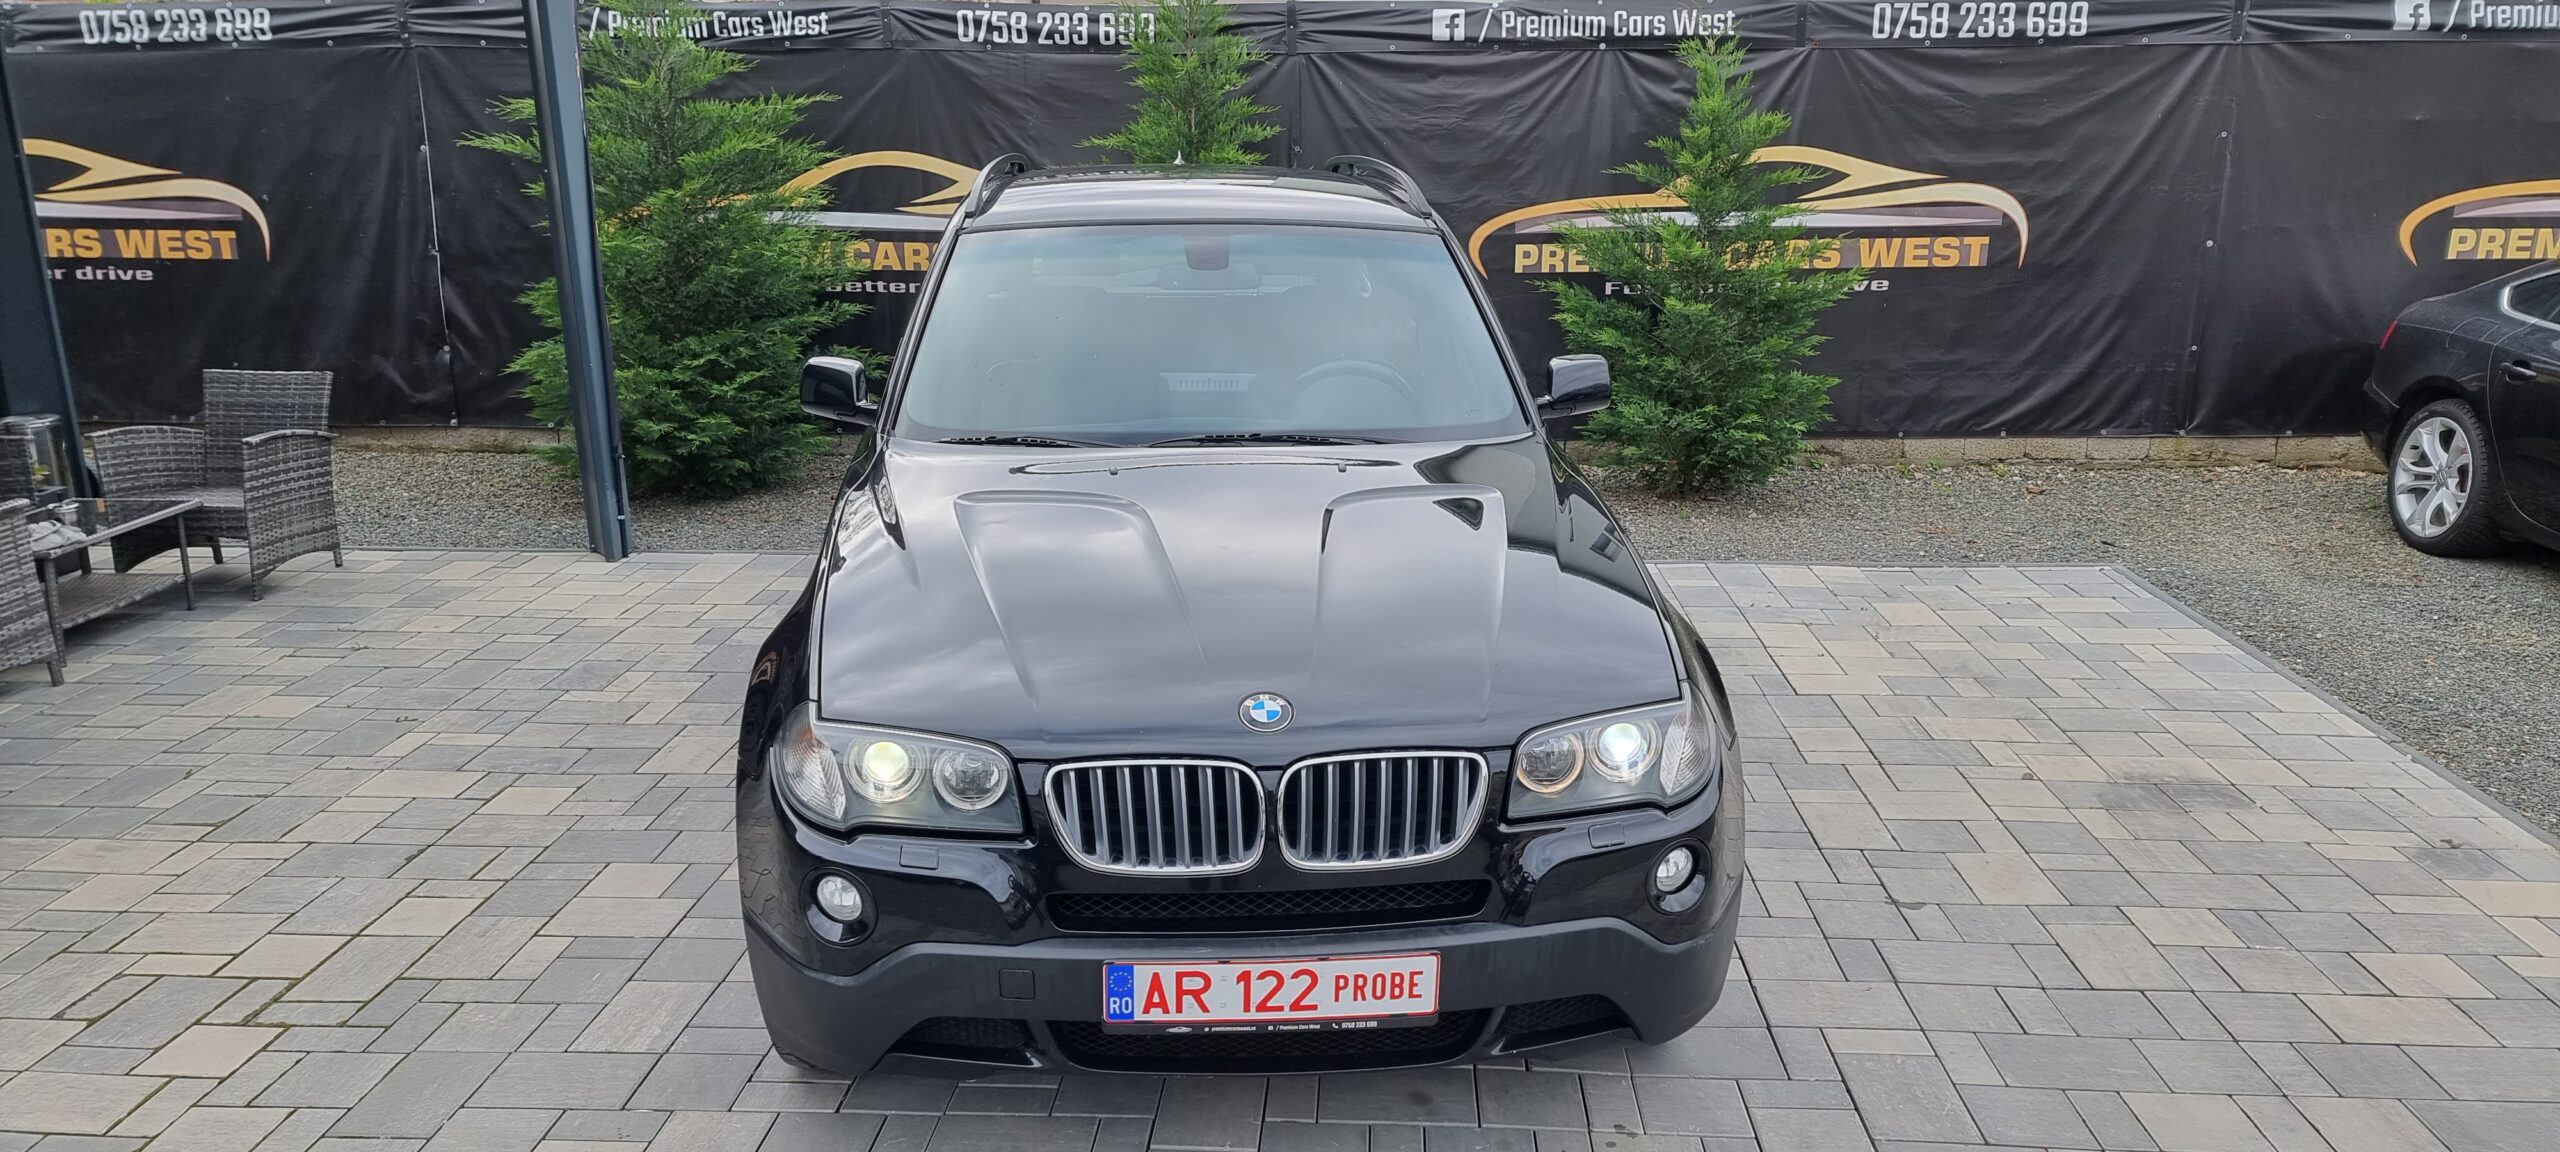 BMW X 3, X-DRIVE, 2.0 DIESEL, 177 CP, EURO 5, AN 2009